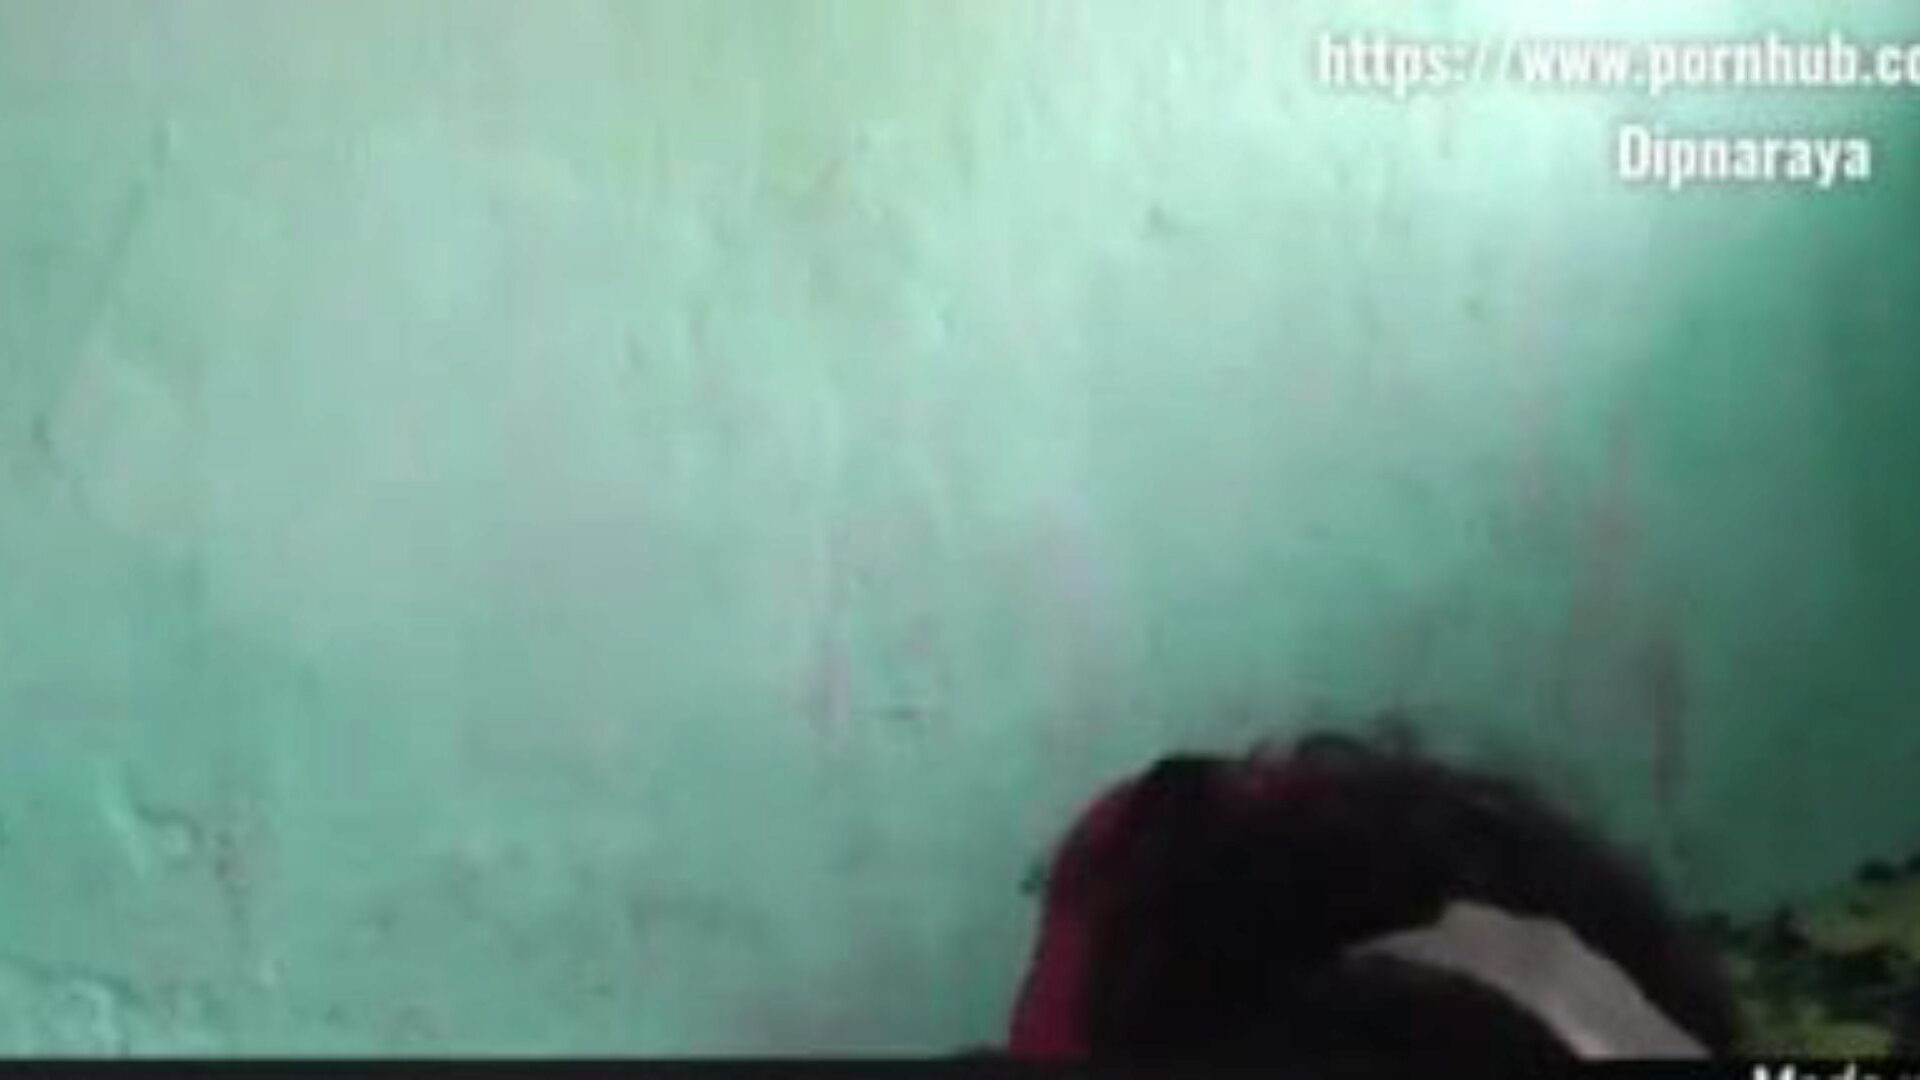 σέξι ζευγάρι ινδικού χωριού σε σπιτικό βίντεο σεξ: πορνό c8 παρακολουθήστε σέξι ζευγάρι ινδικού χωριού σε σπιτικό βίντεο σεξ βίντεο στο xhamster - η απόλυτη βάση δεδομένων των δωρεάν ασιατικών xxn sex gonzo πορνογραφικών σκηνών ταινίας πορνό